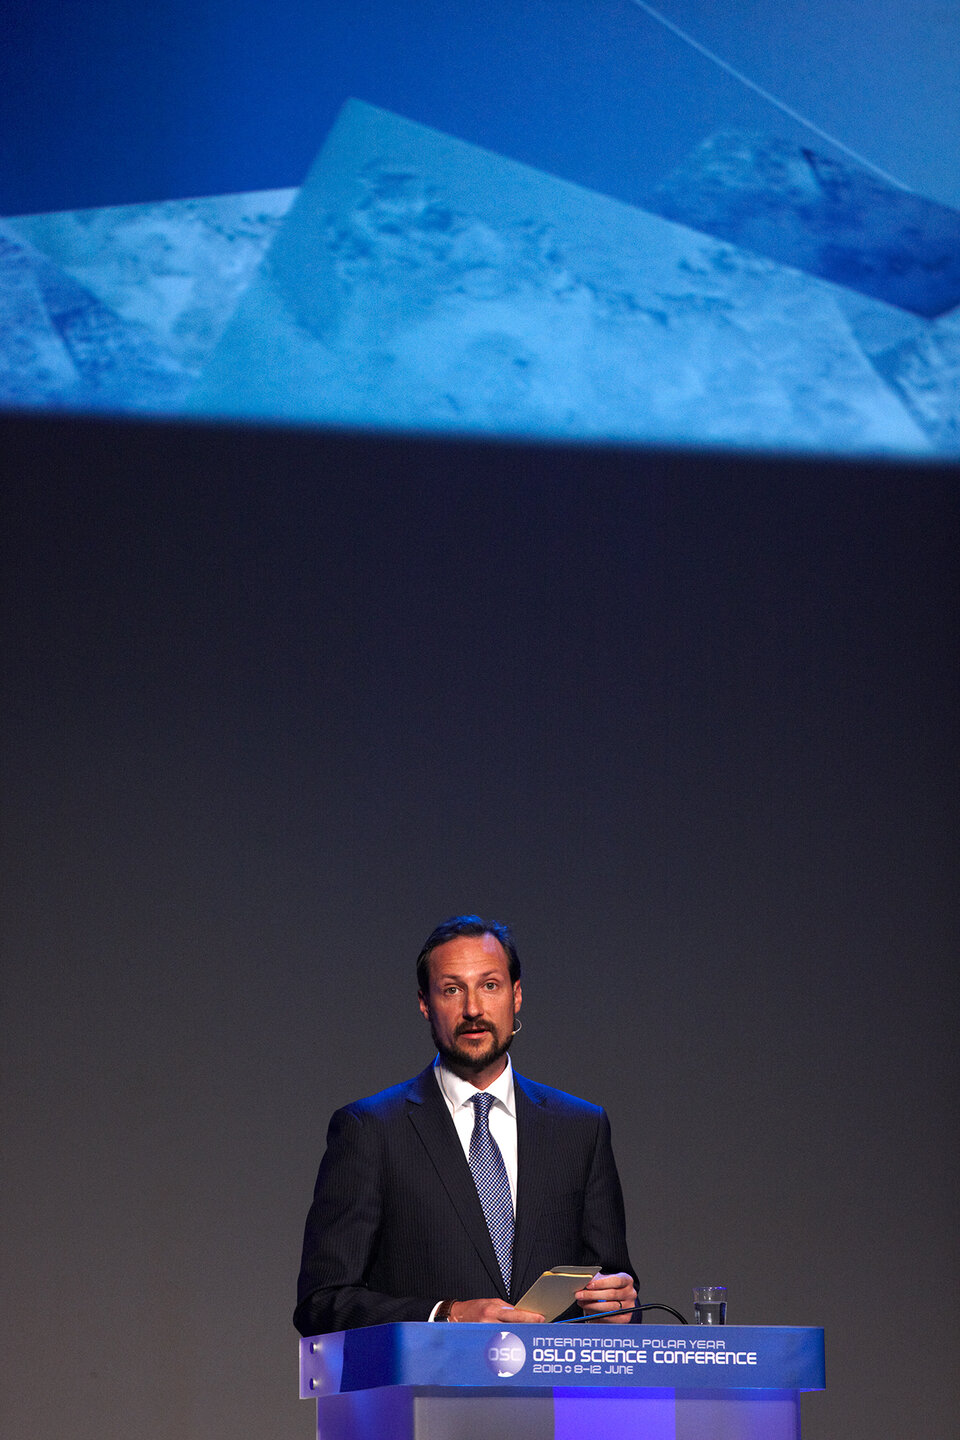 El Príncipe Haakon de Noruega inauguró la conferencia